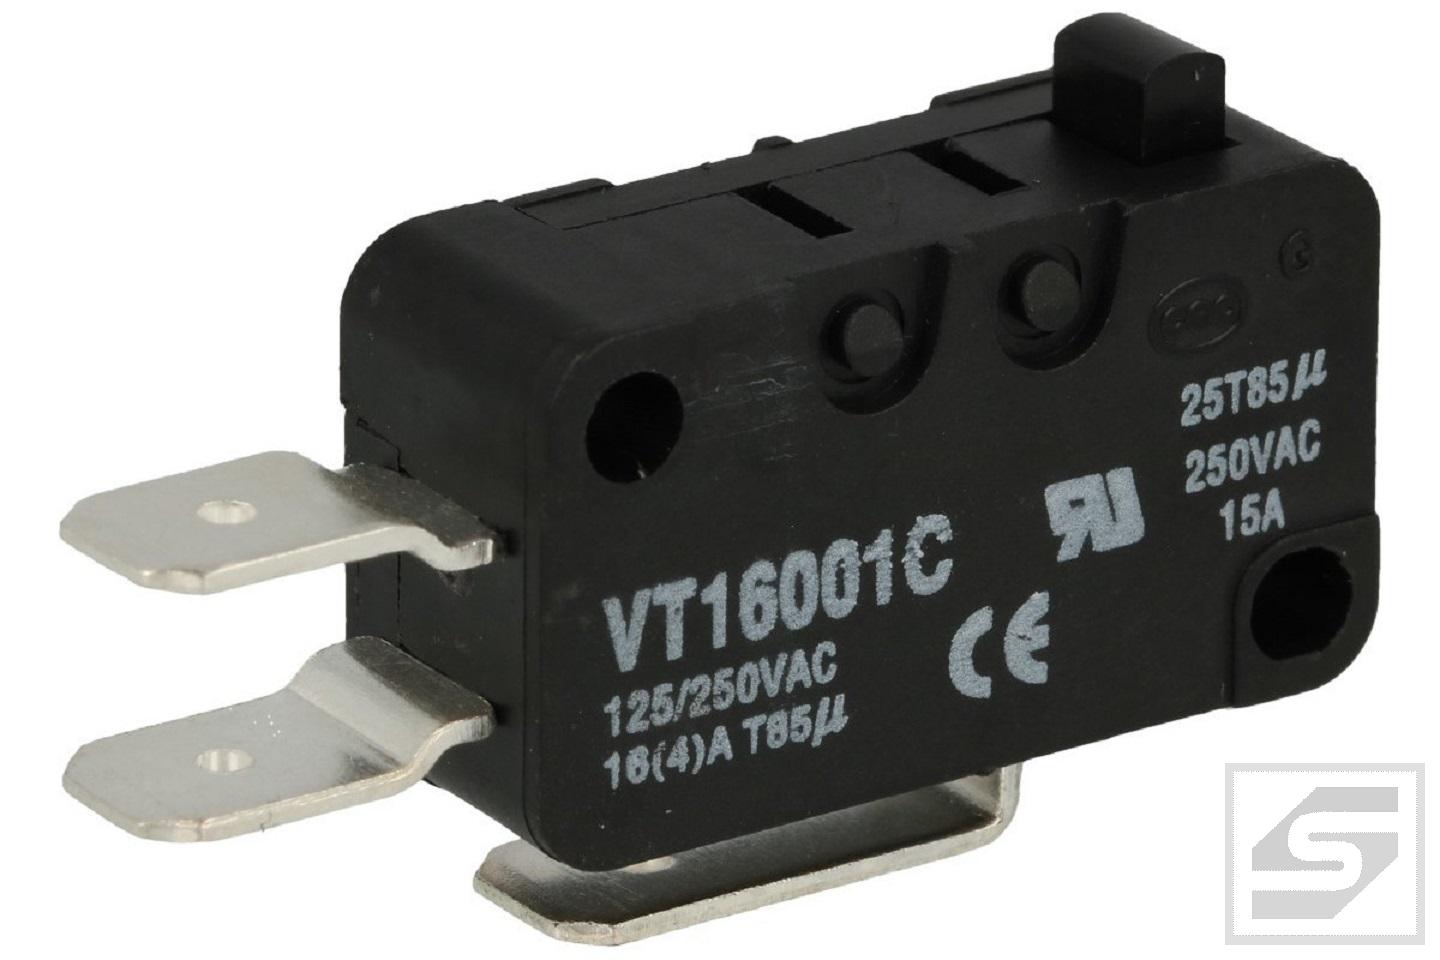 Mikroprzełącznik VT1600-1C HIGHLY bez dźwigni;16A/250V;RoHS